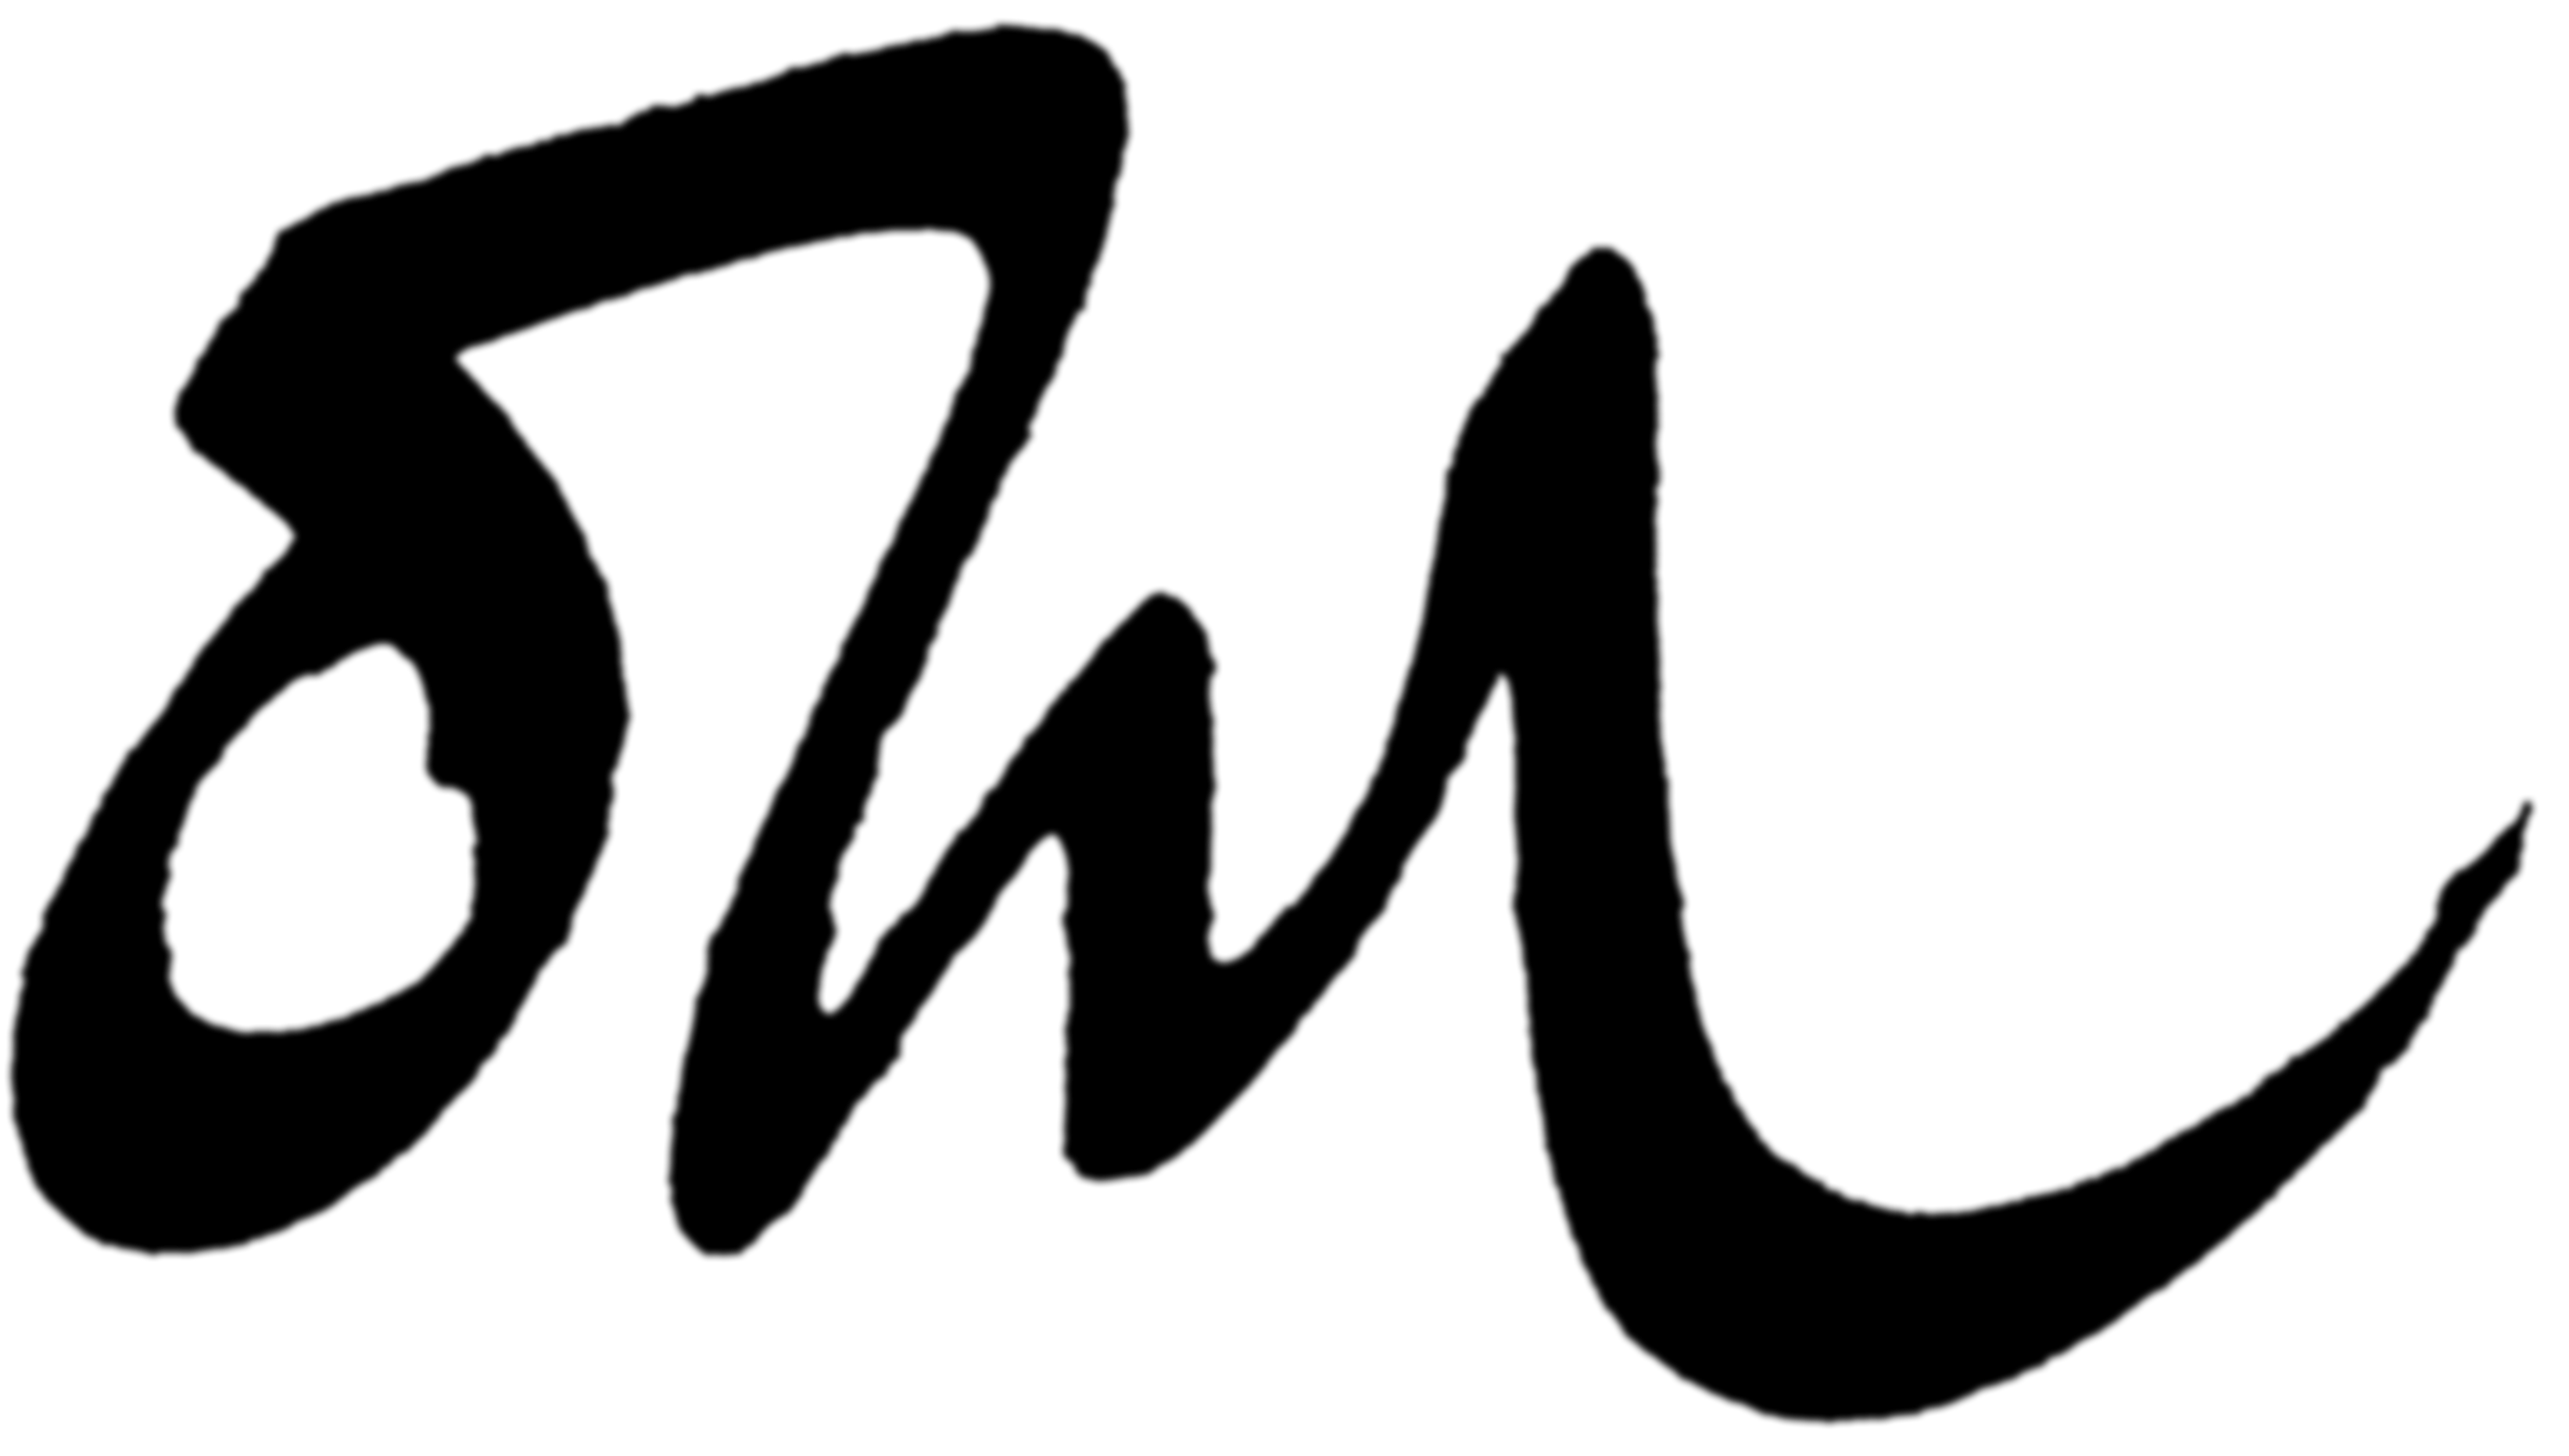 Atili monogram